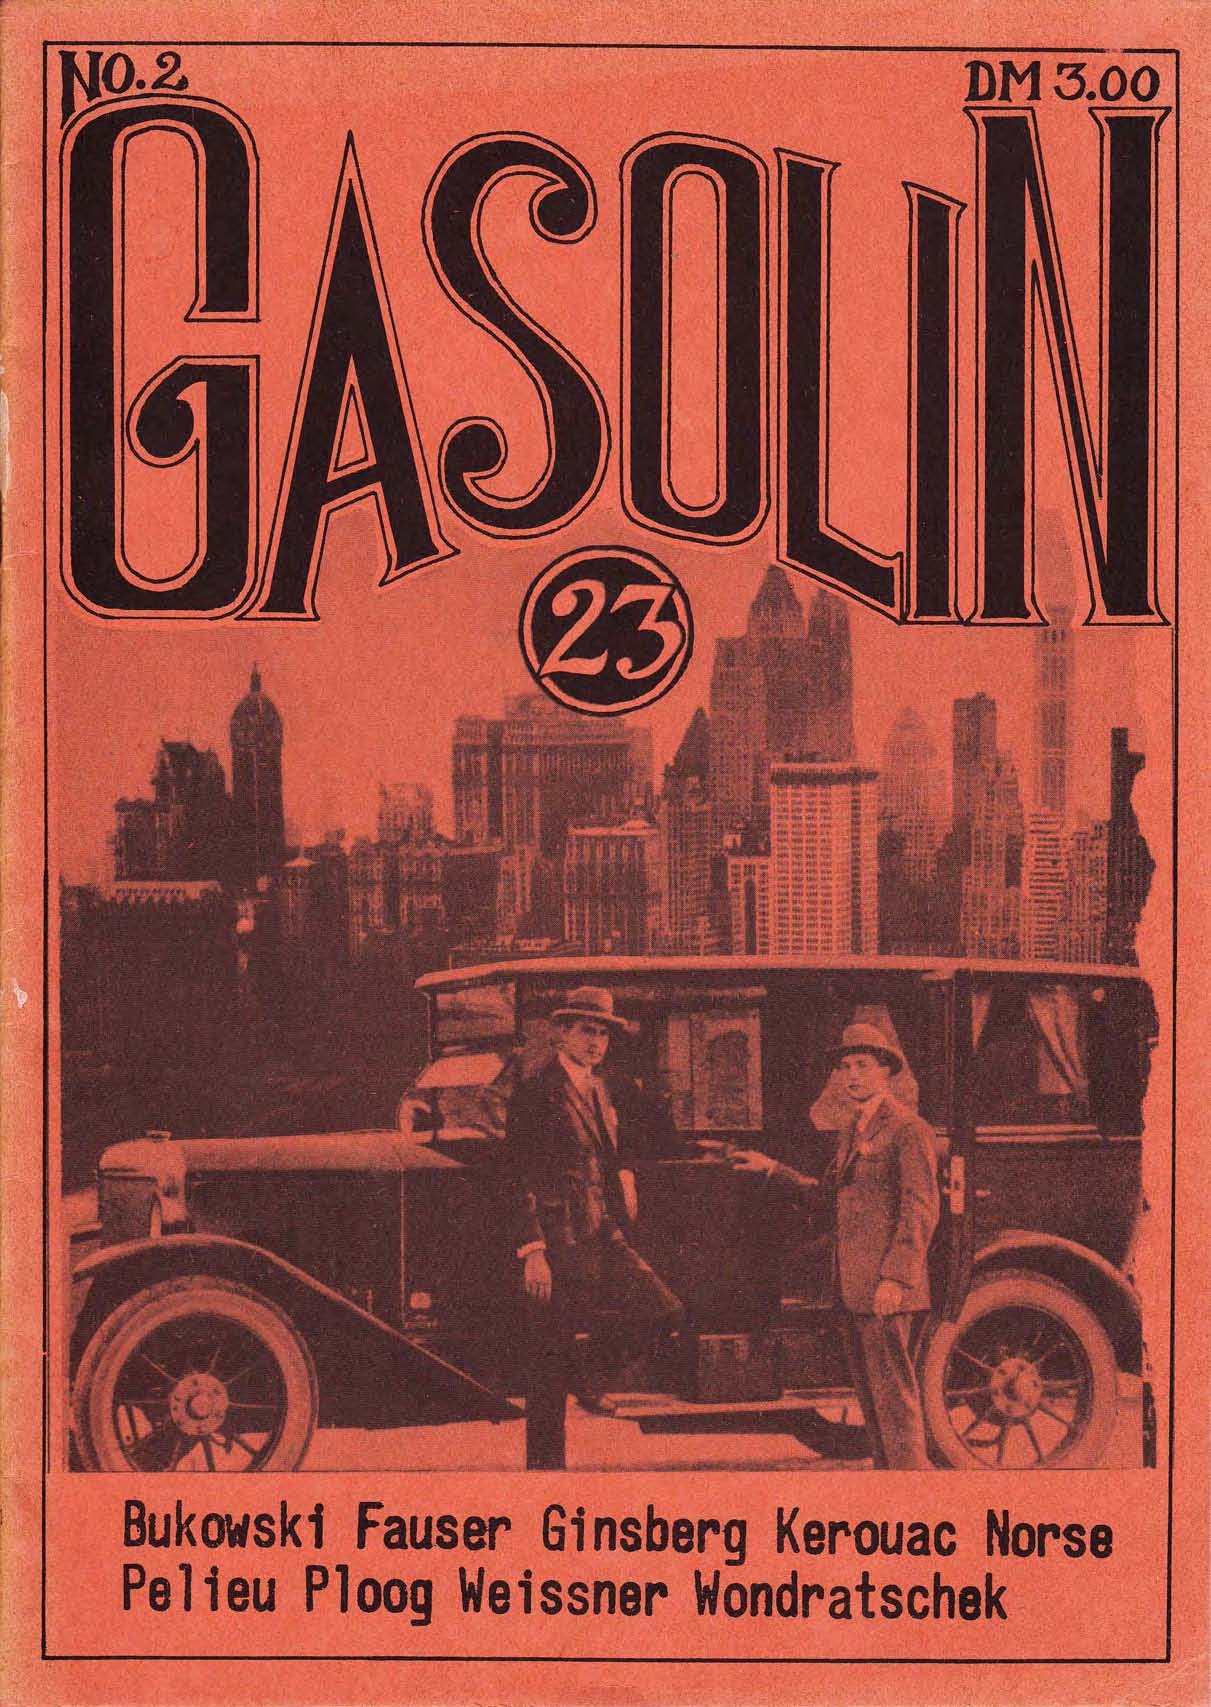 Zeitschrift "Gasolin 23", Nr. 2, April 1973